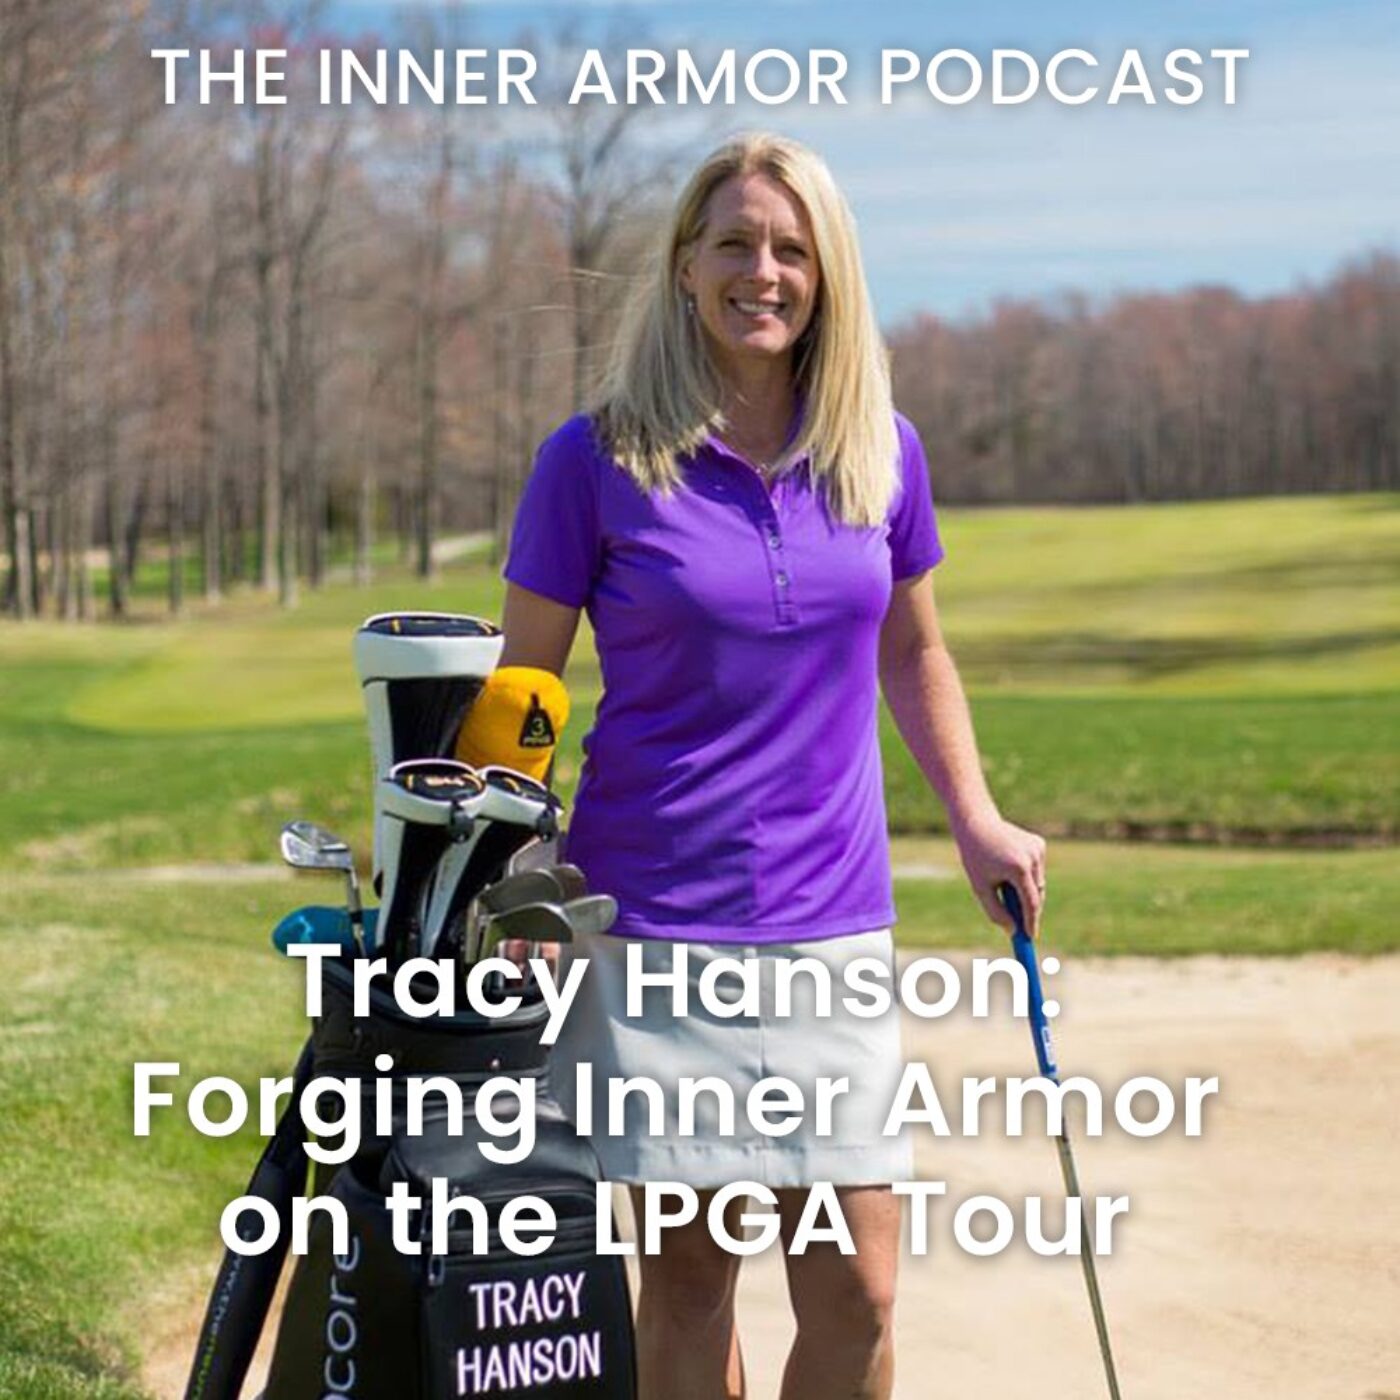 Tracy Hanson: Forging Inner Armor on the LPGA Tour